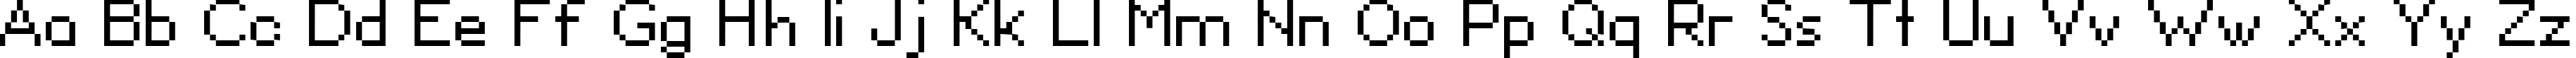 Пример написания английского алфавита шрифтом David Sans